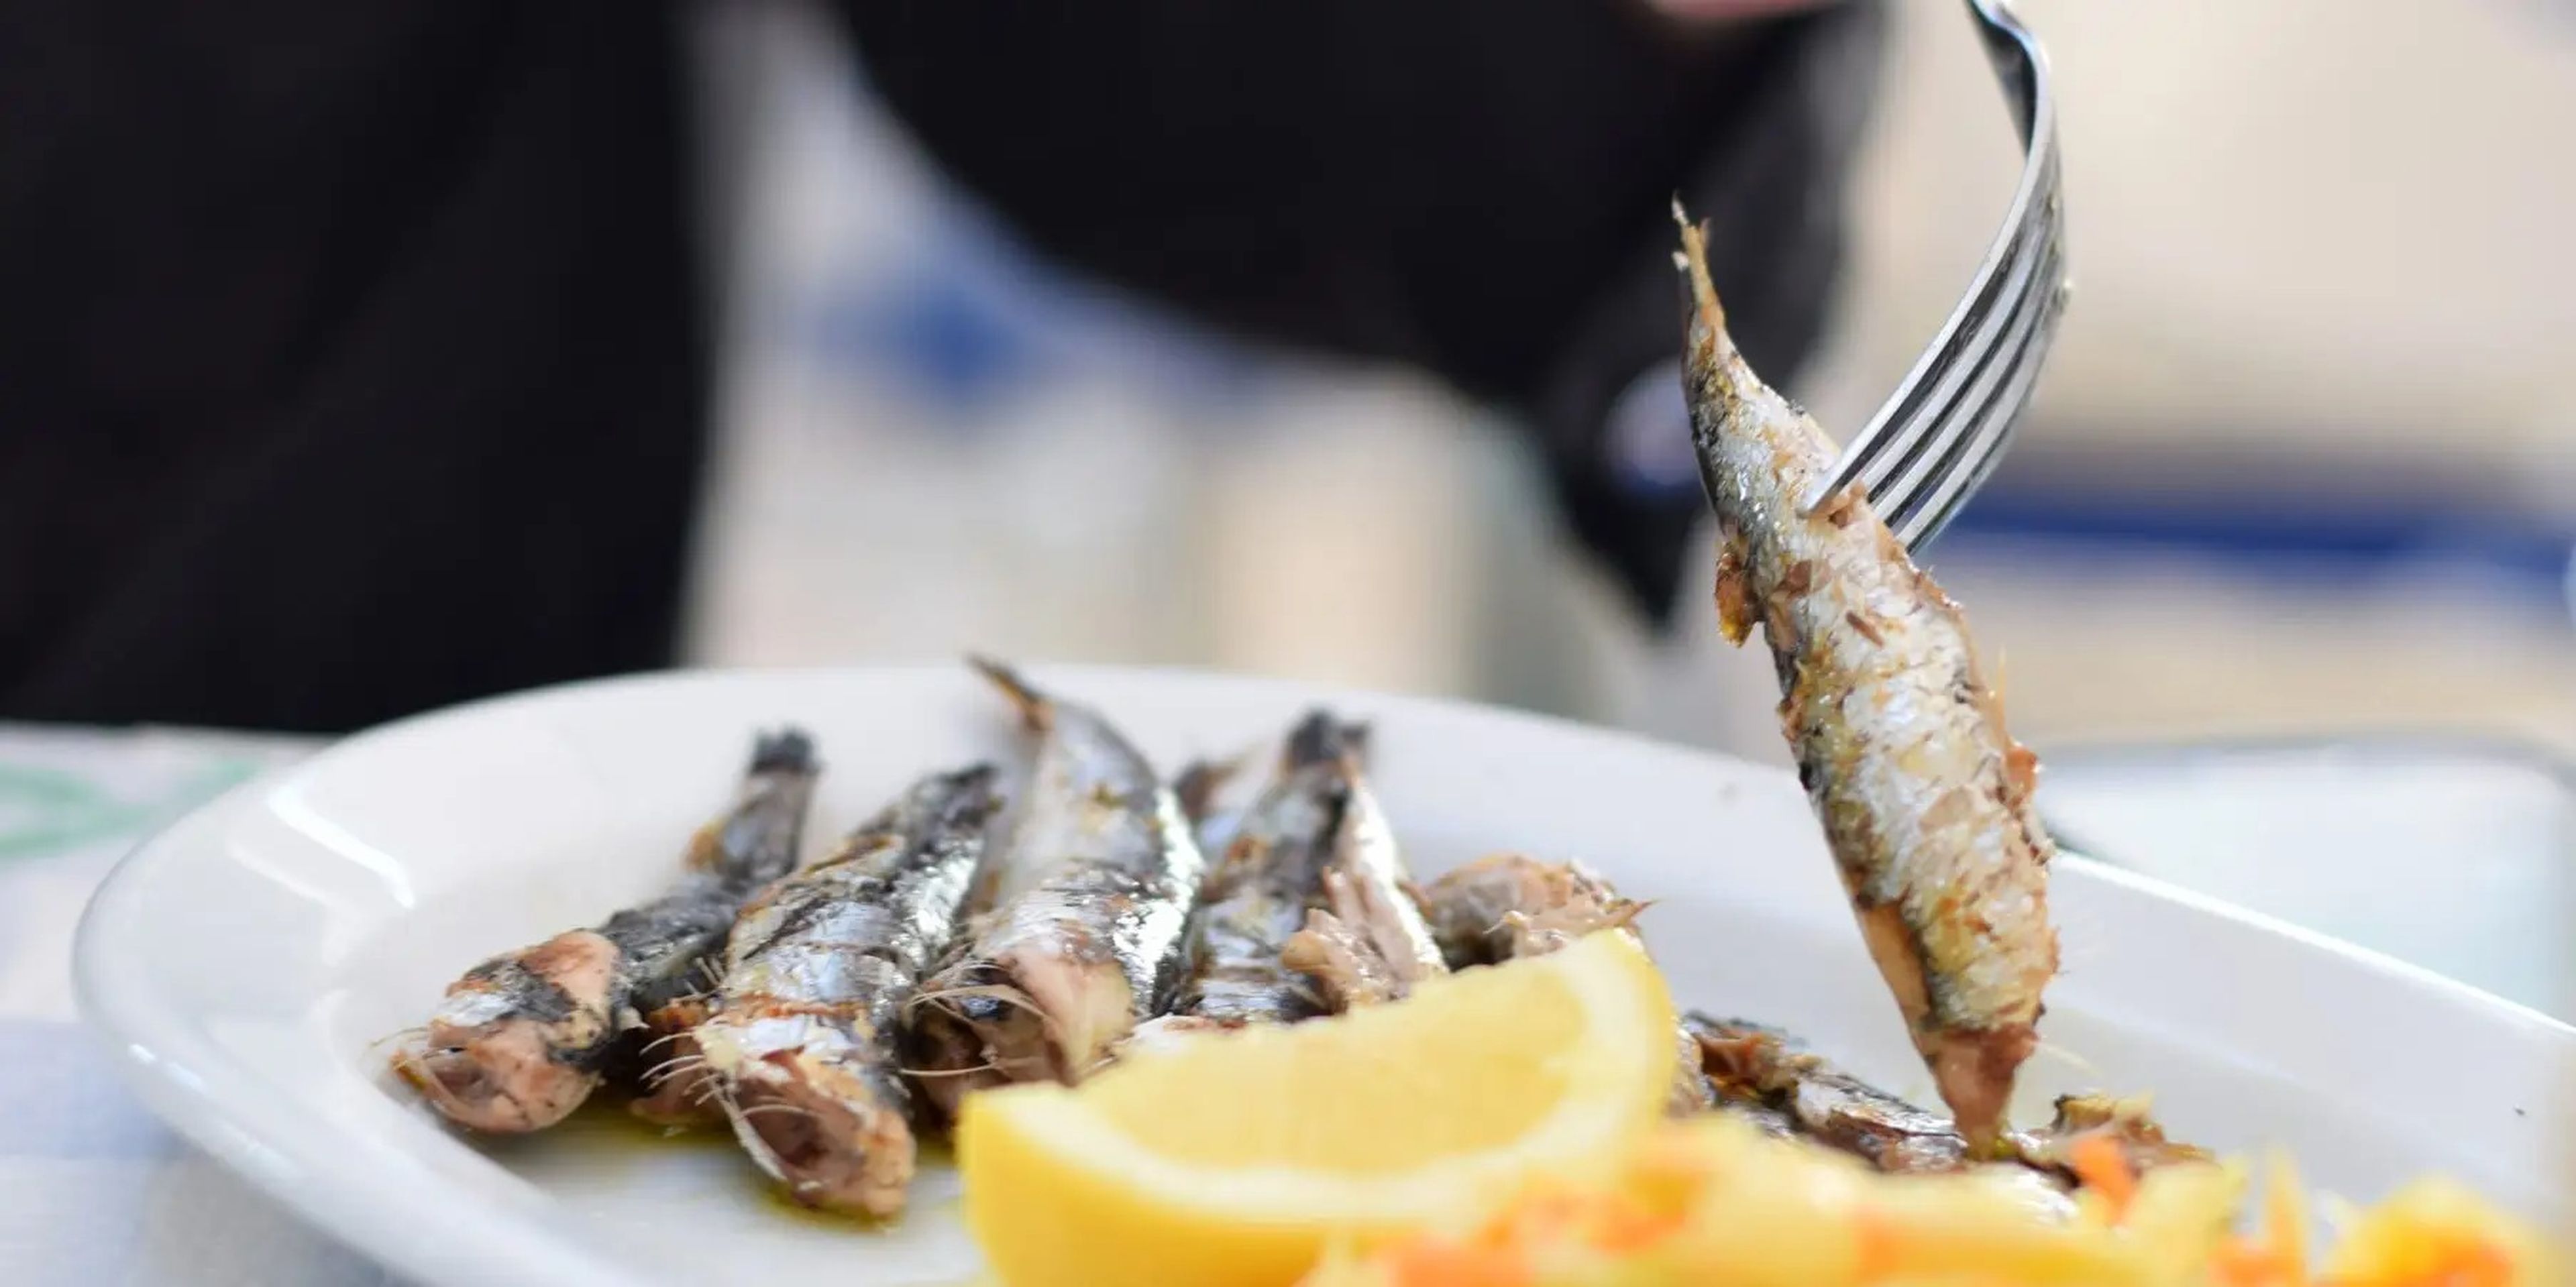 Comer sardinas y otros pescados pequeños es una buena manera de obtener una gran cantidad de omega-3 en una porción pequeña.